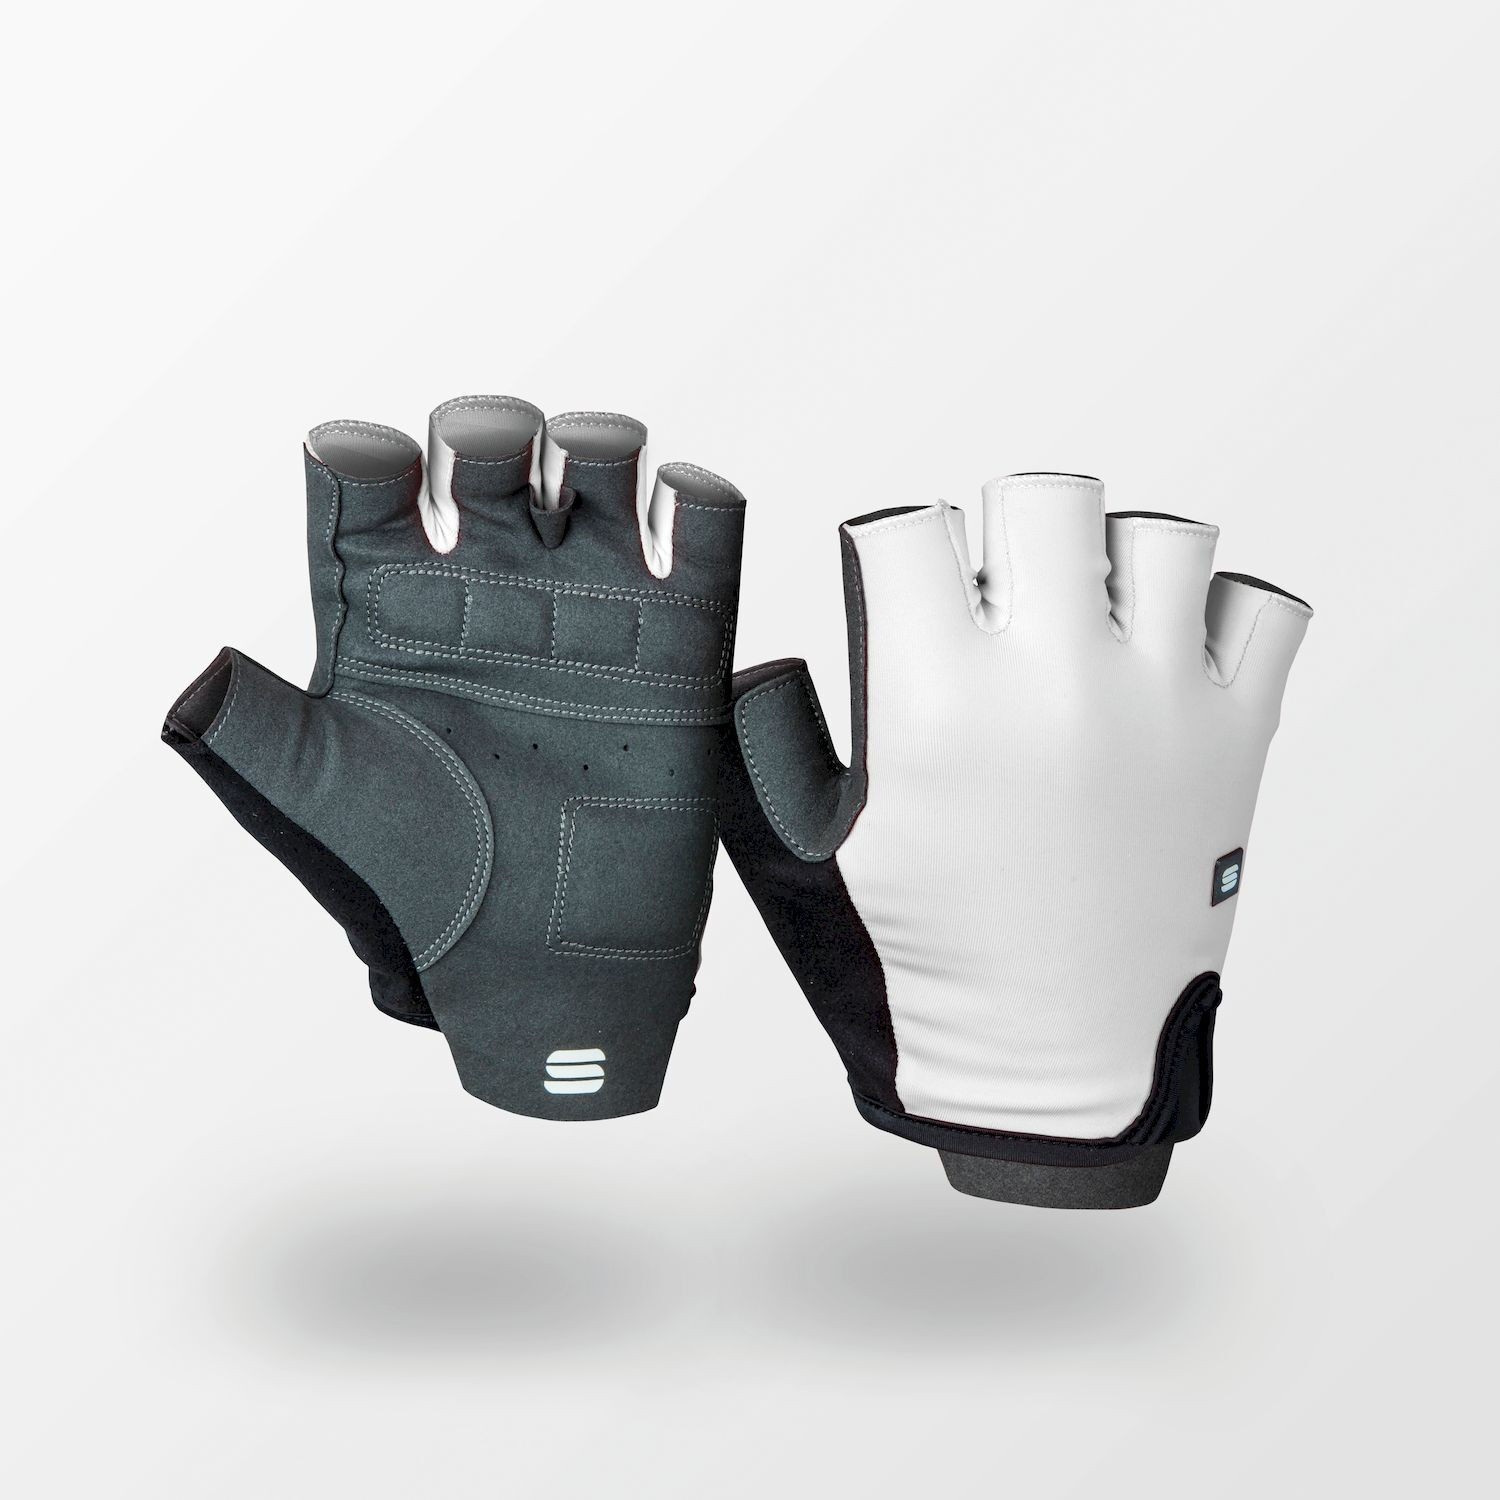 Sportful Matchy Gloves - Short finger gloves